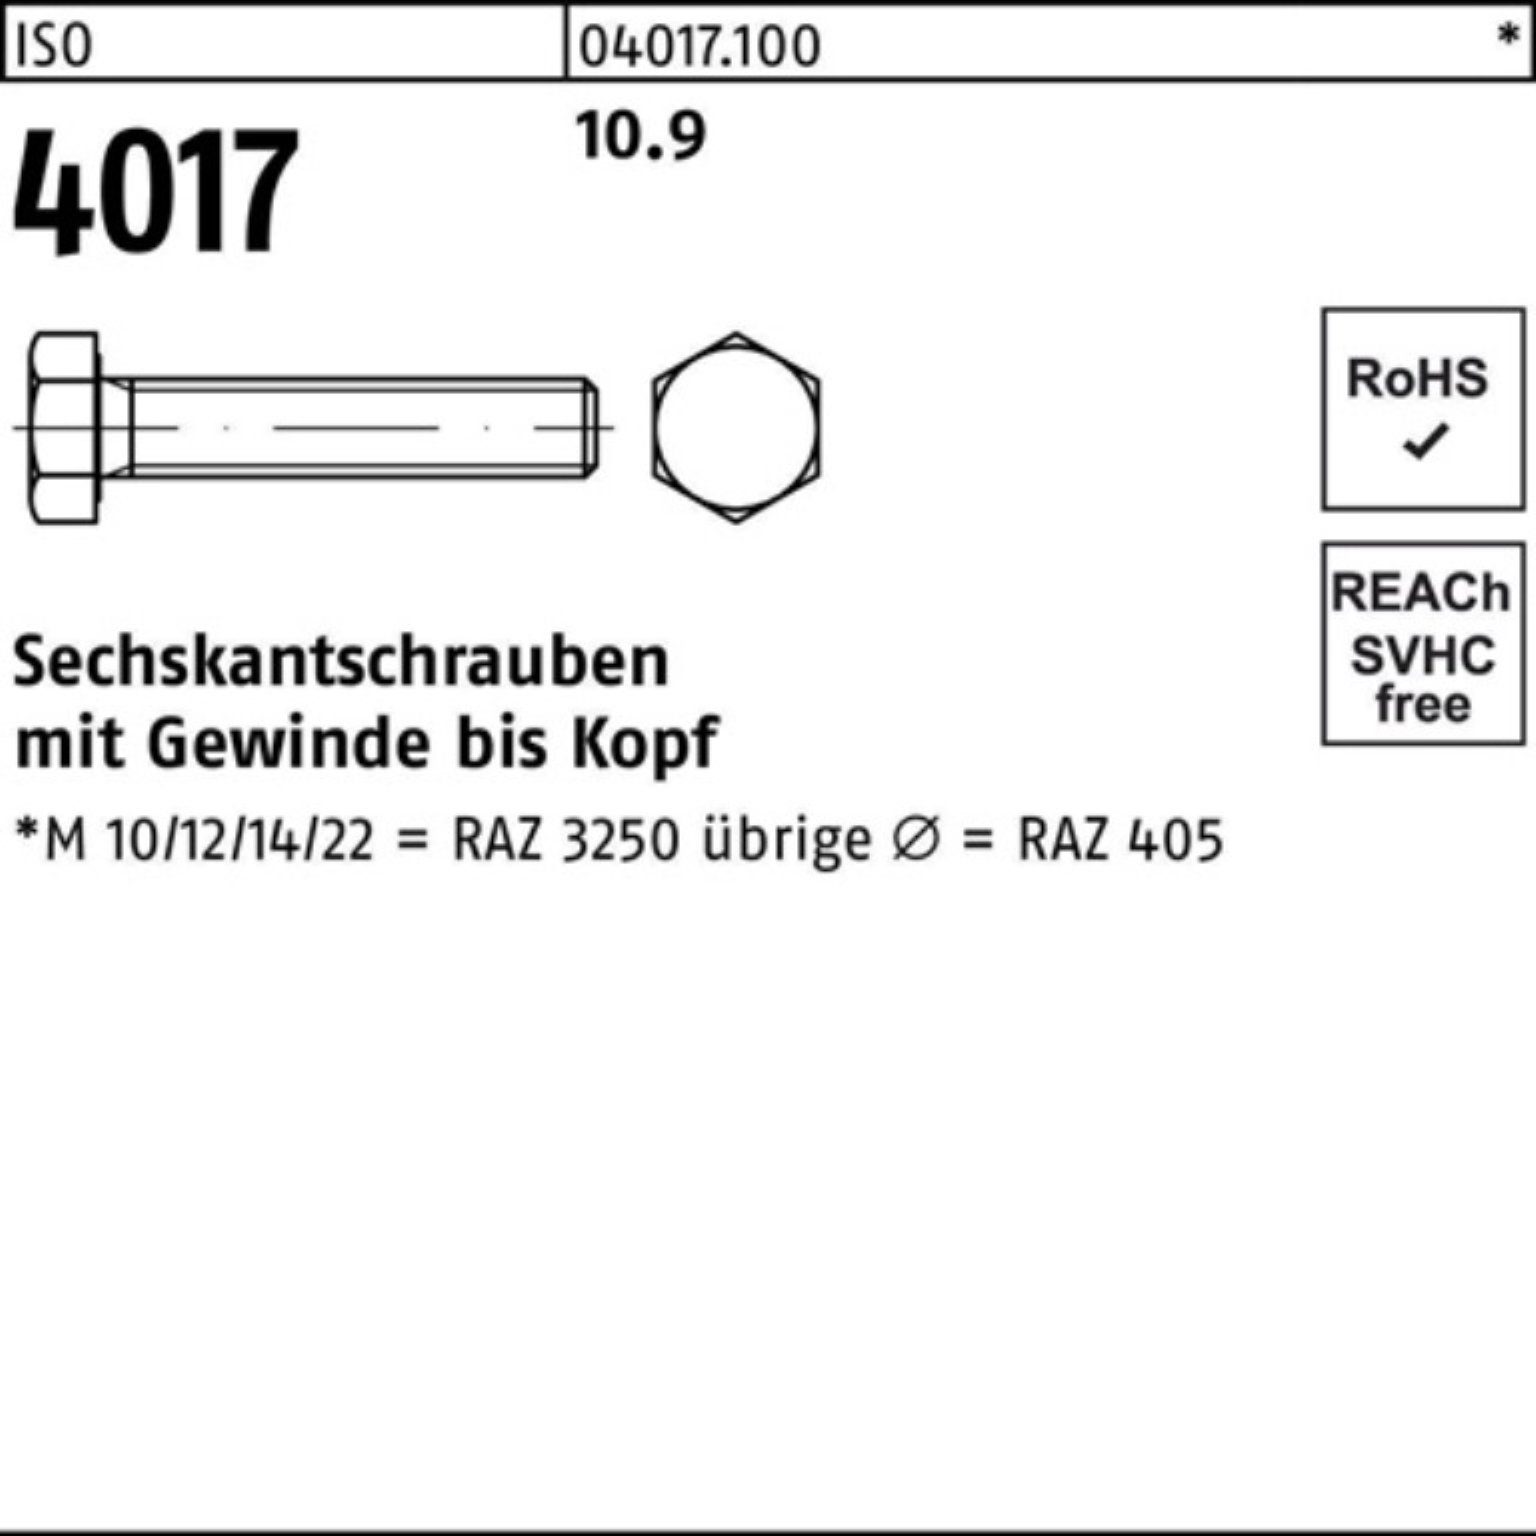 Bufab Sechskantschraube 100er Pack Sechskantschraube Stück 100 M33x 4017 10.9 ISO 1 VG ISO 40